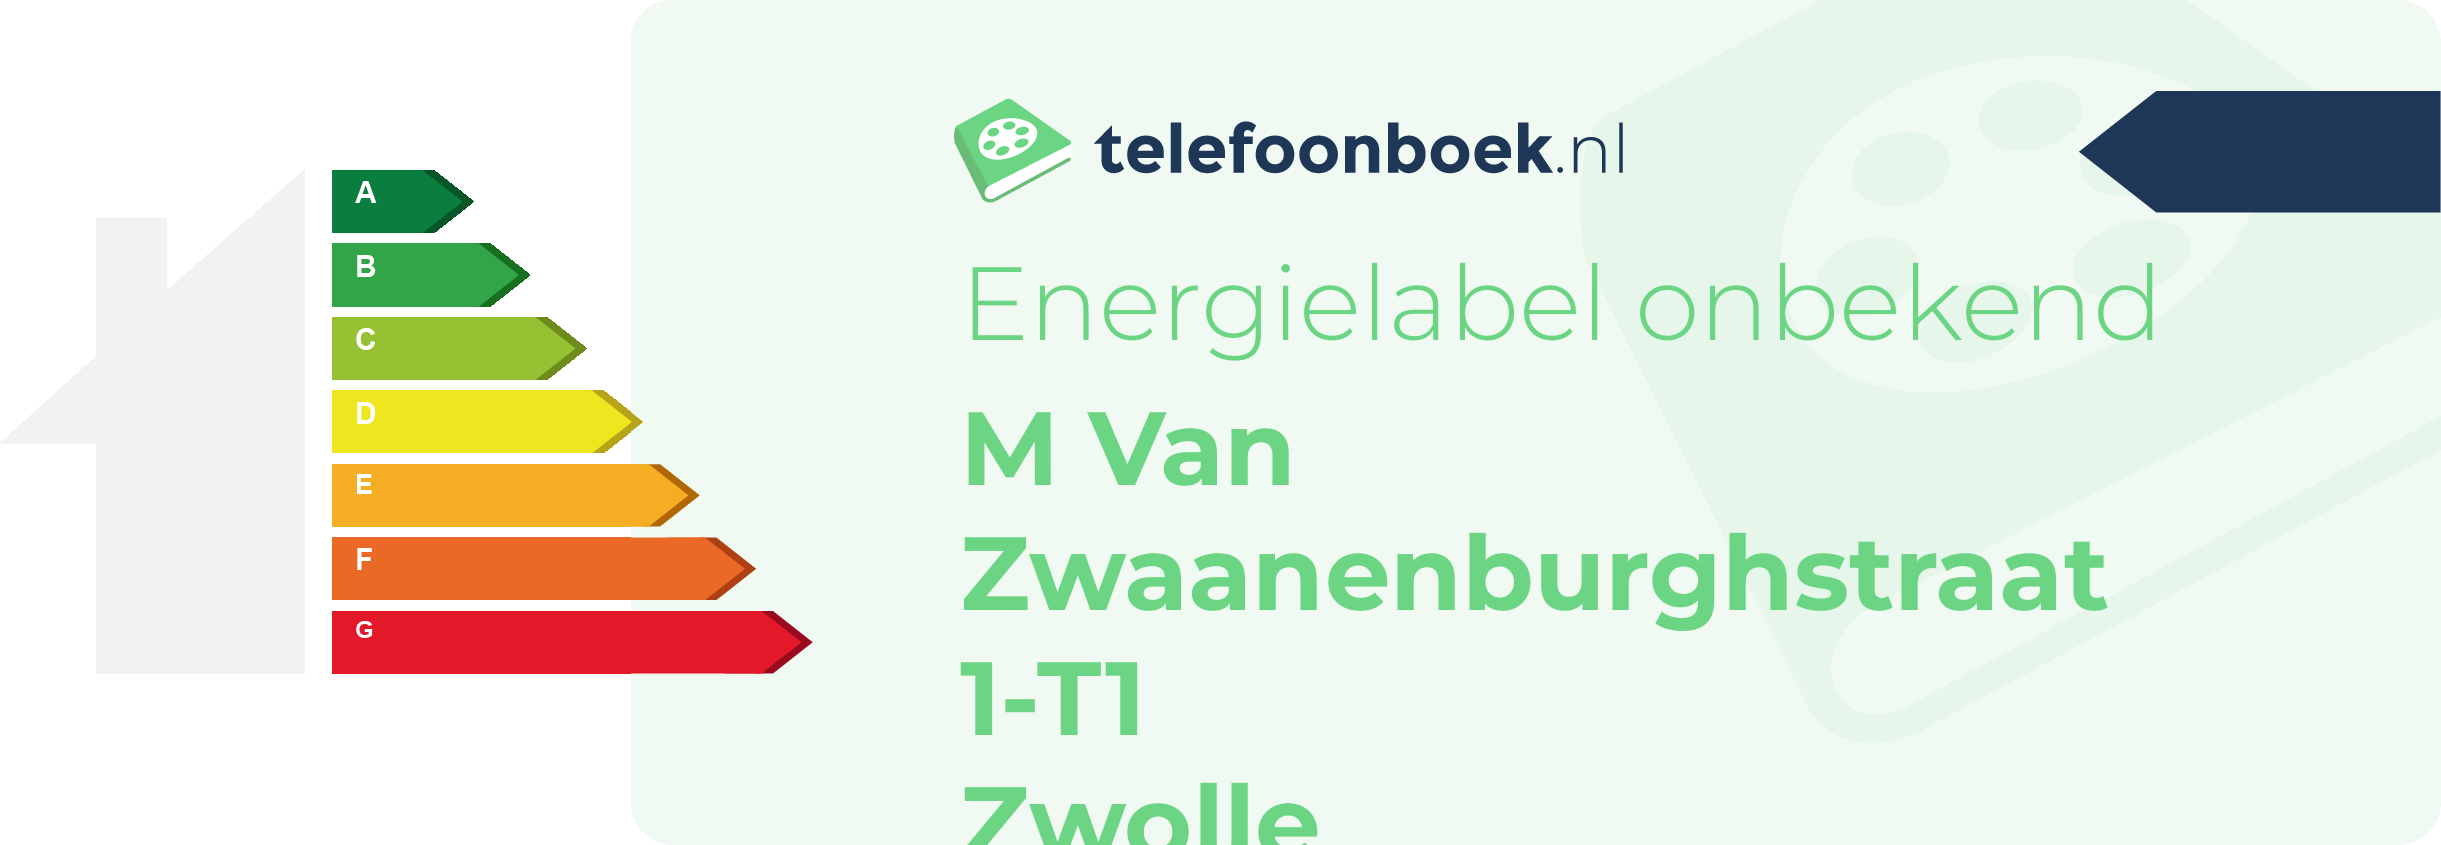 Energielabel M Van Zwaanenburghstraat 1-T1 Zwolle